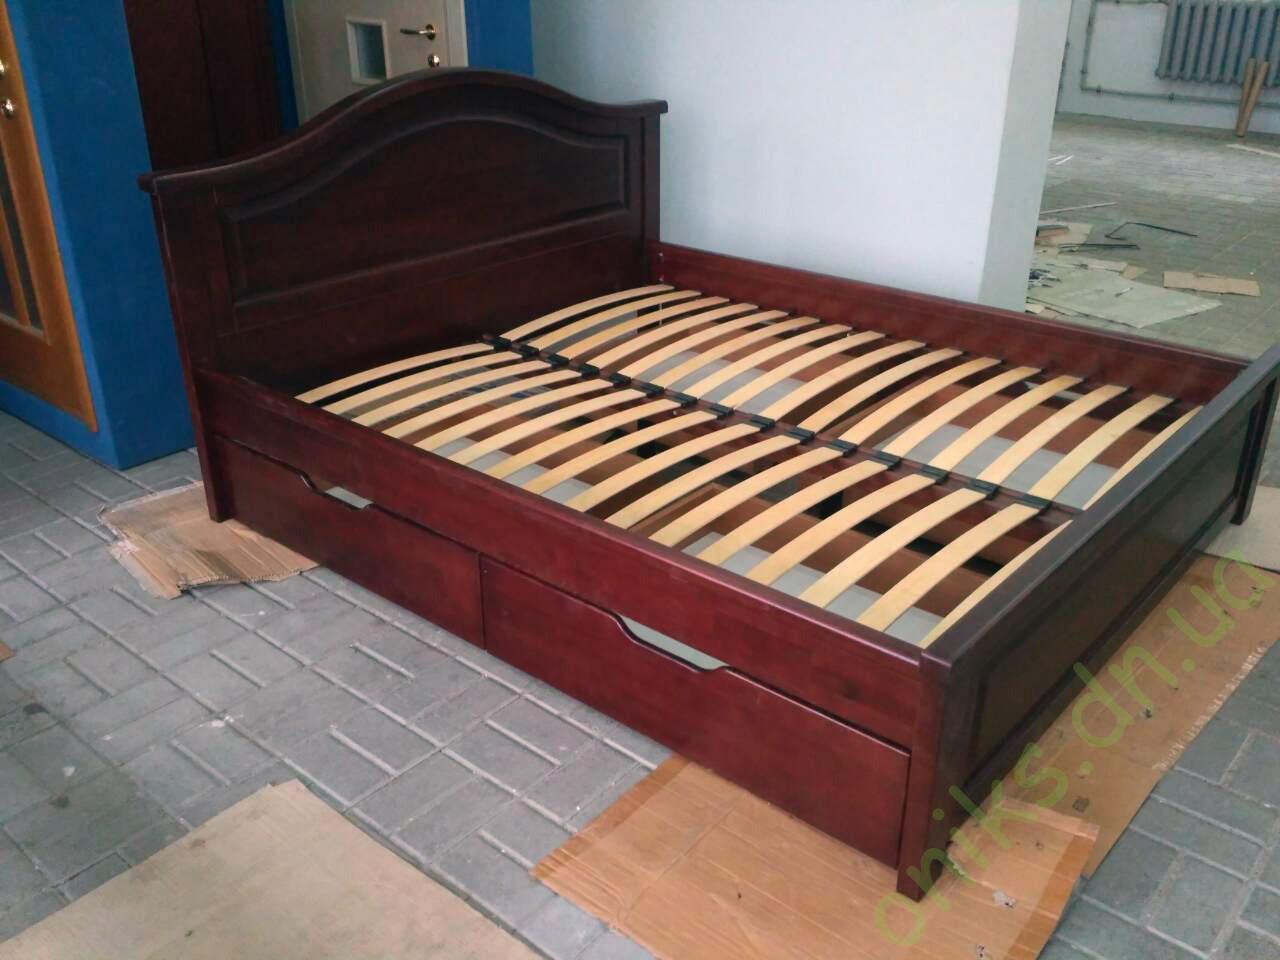 двуспальная деревянная кровать с выкатывающимися ящиками в Донецке